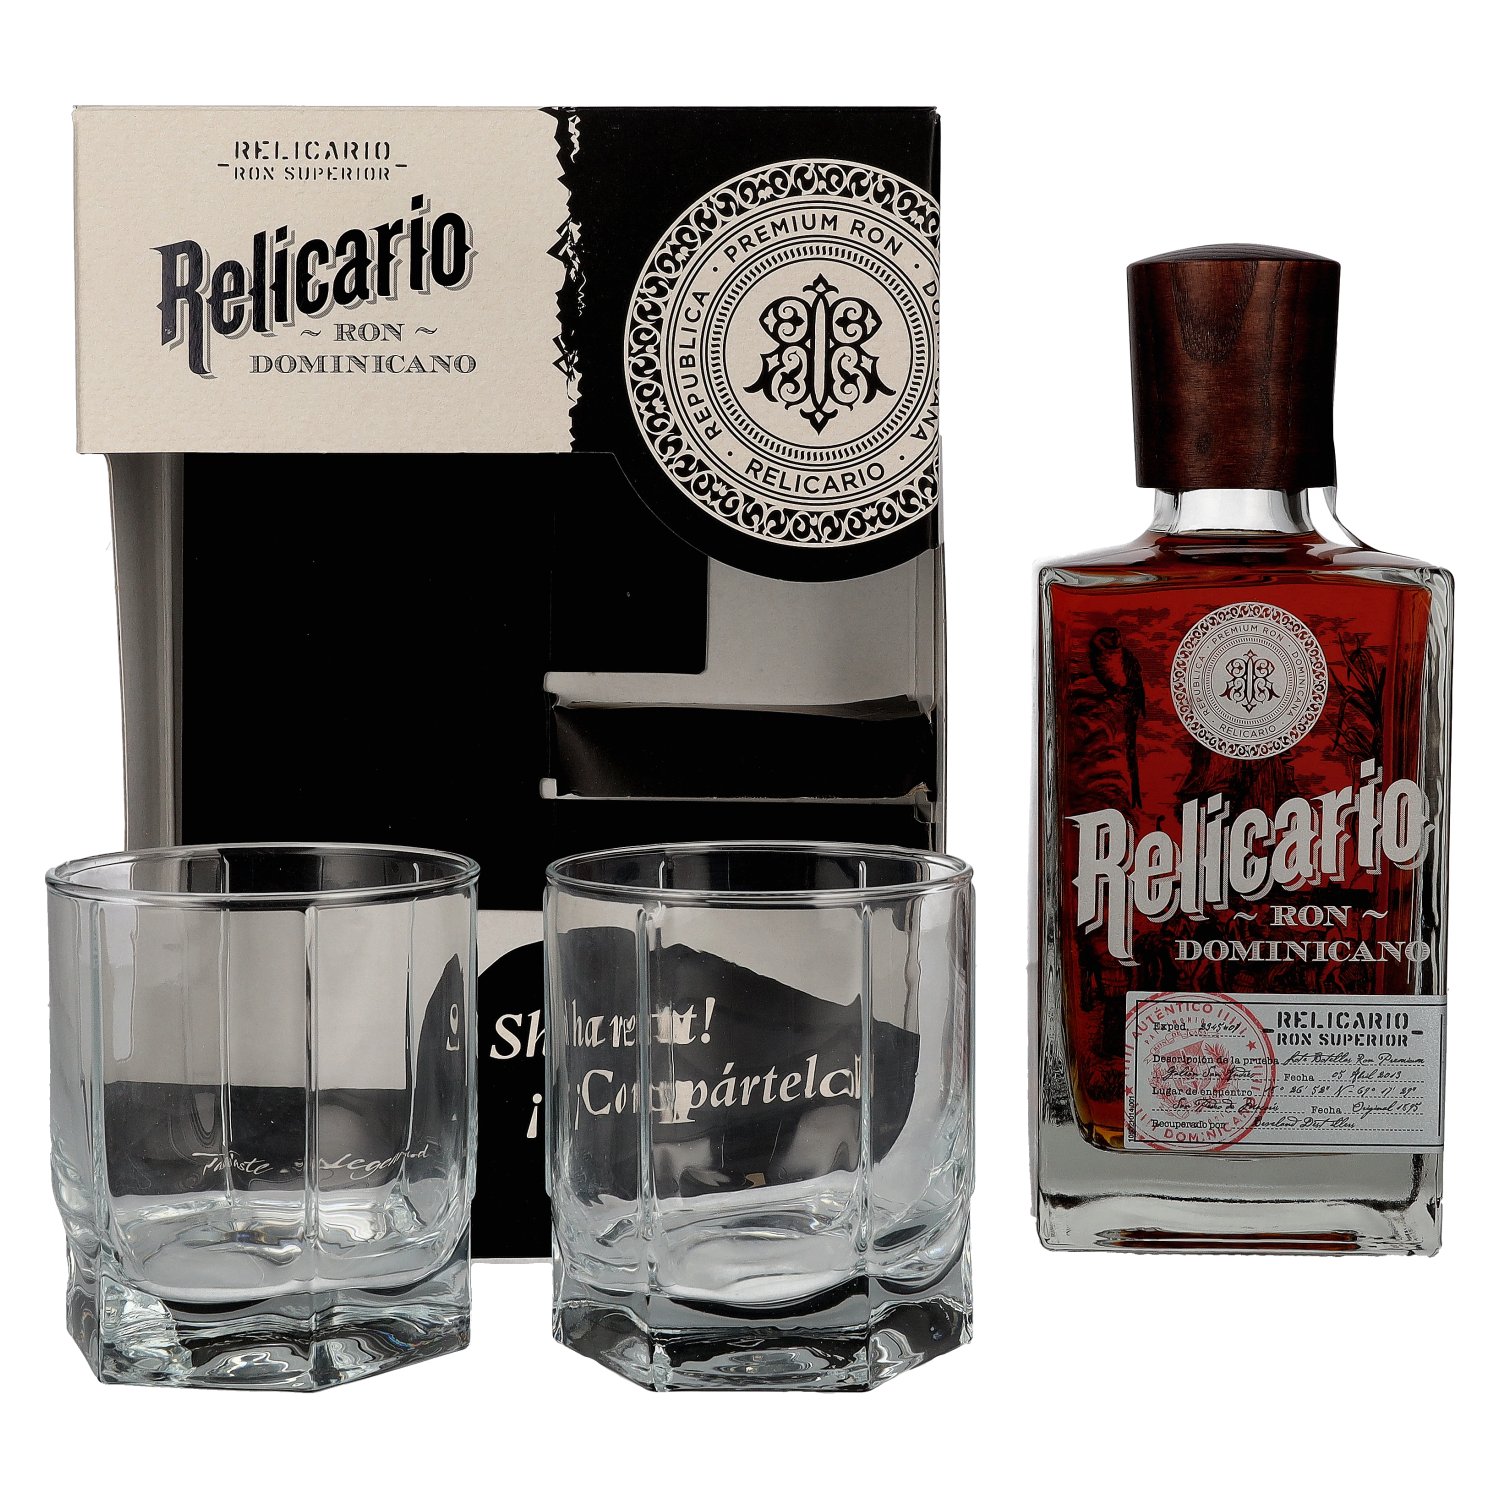 Ron Superior Relicario 40% Dominicano Giftbox 0,7l with 2 glasses Vol. in